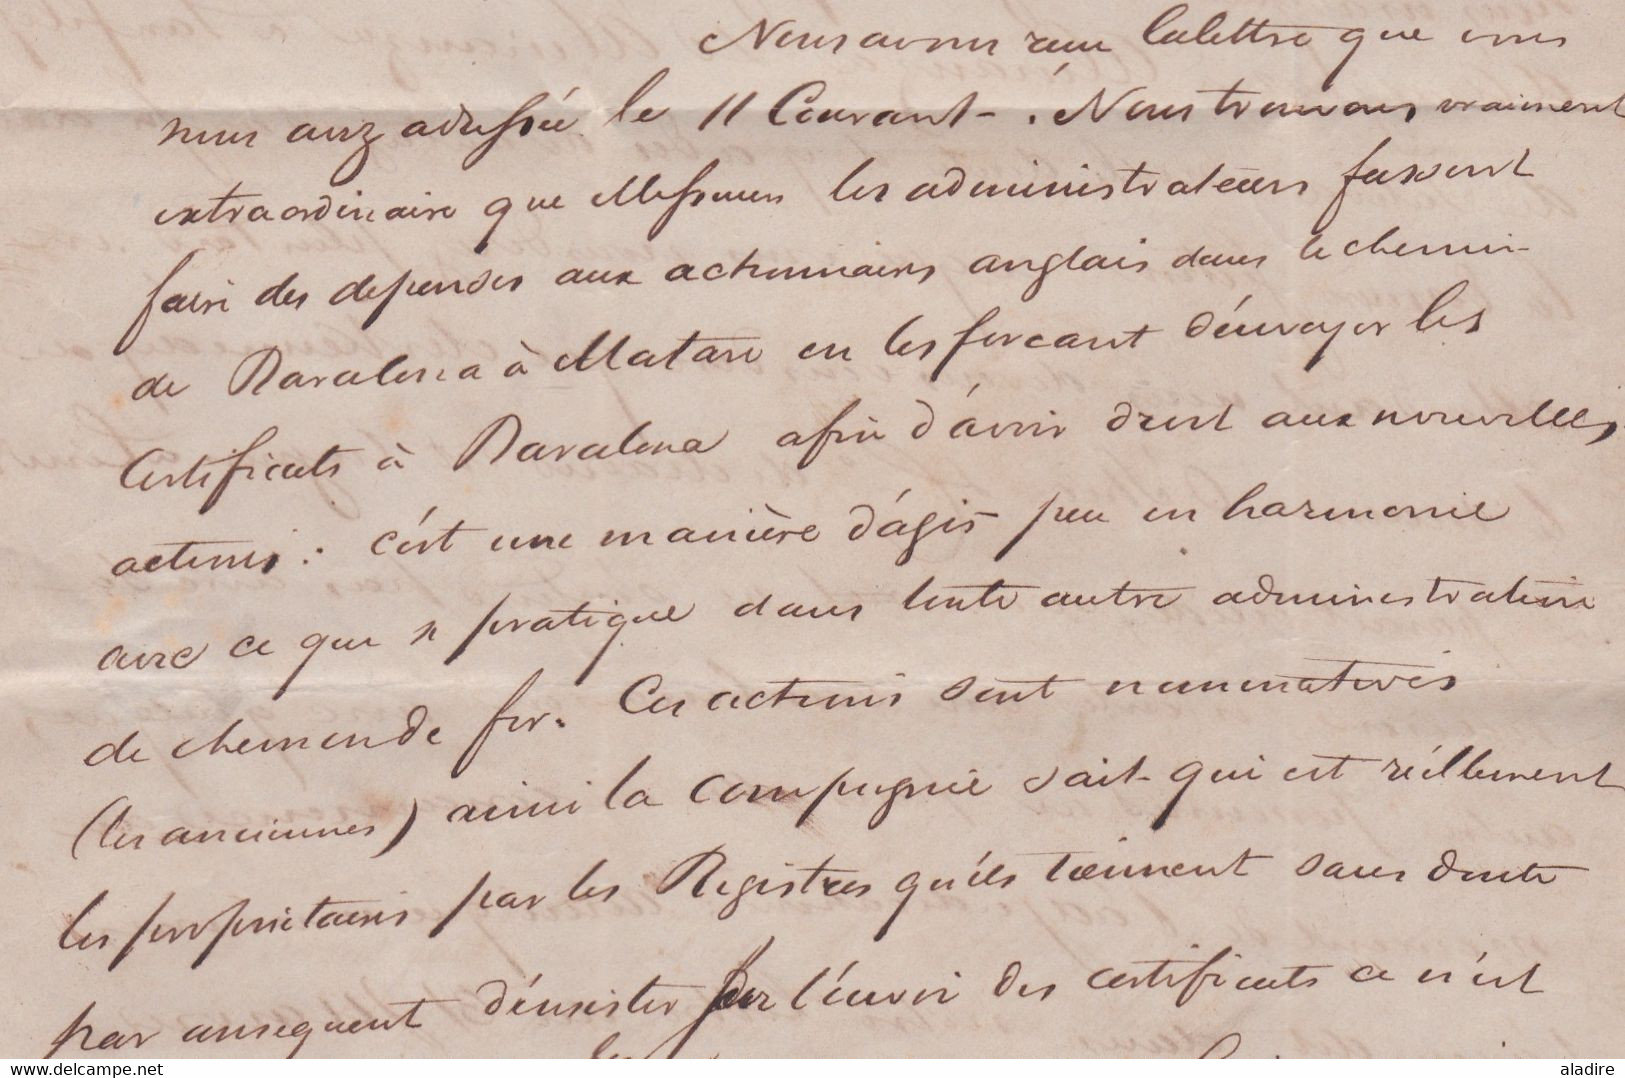 1852 - Lettre pliée avec corespondance de 3 p en français de London vers Barcelona Catalunya Espagne via France